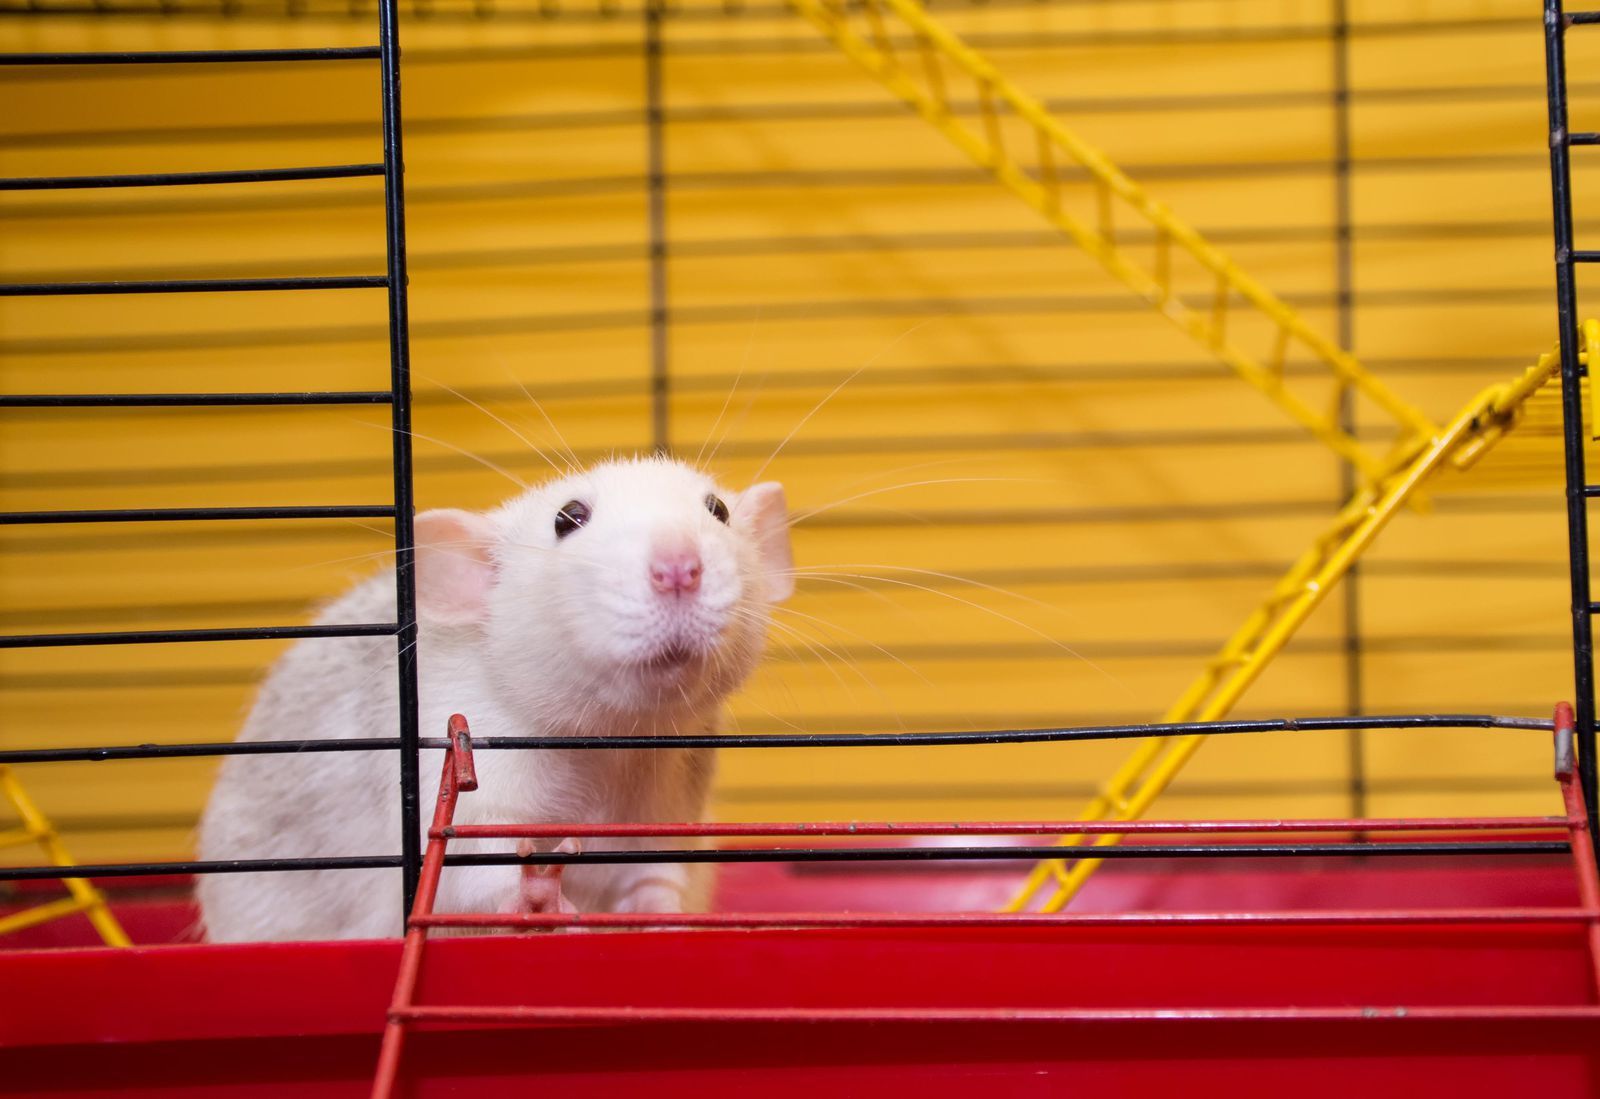 Chuột là loài động vật được sử dụng nhiều nhất trong các thí nghiệm (ảnh minh họa)